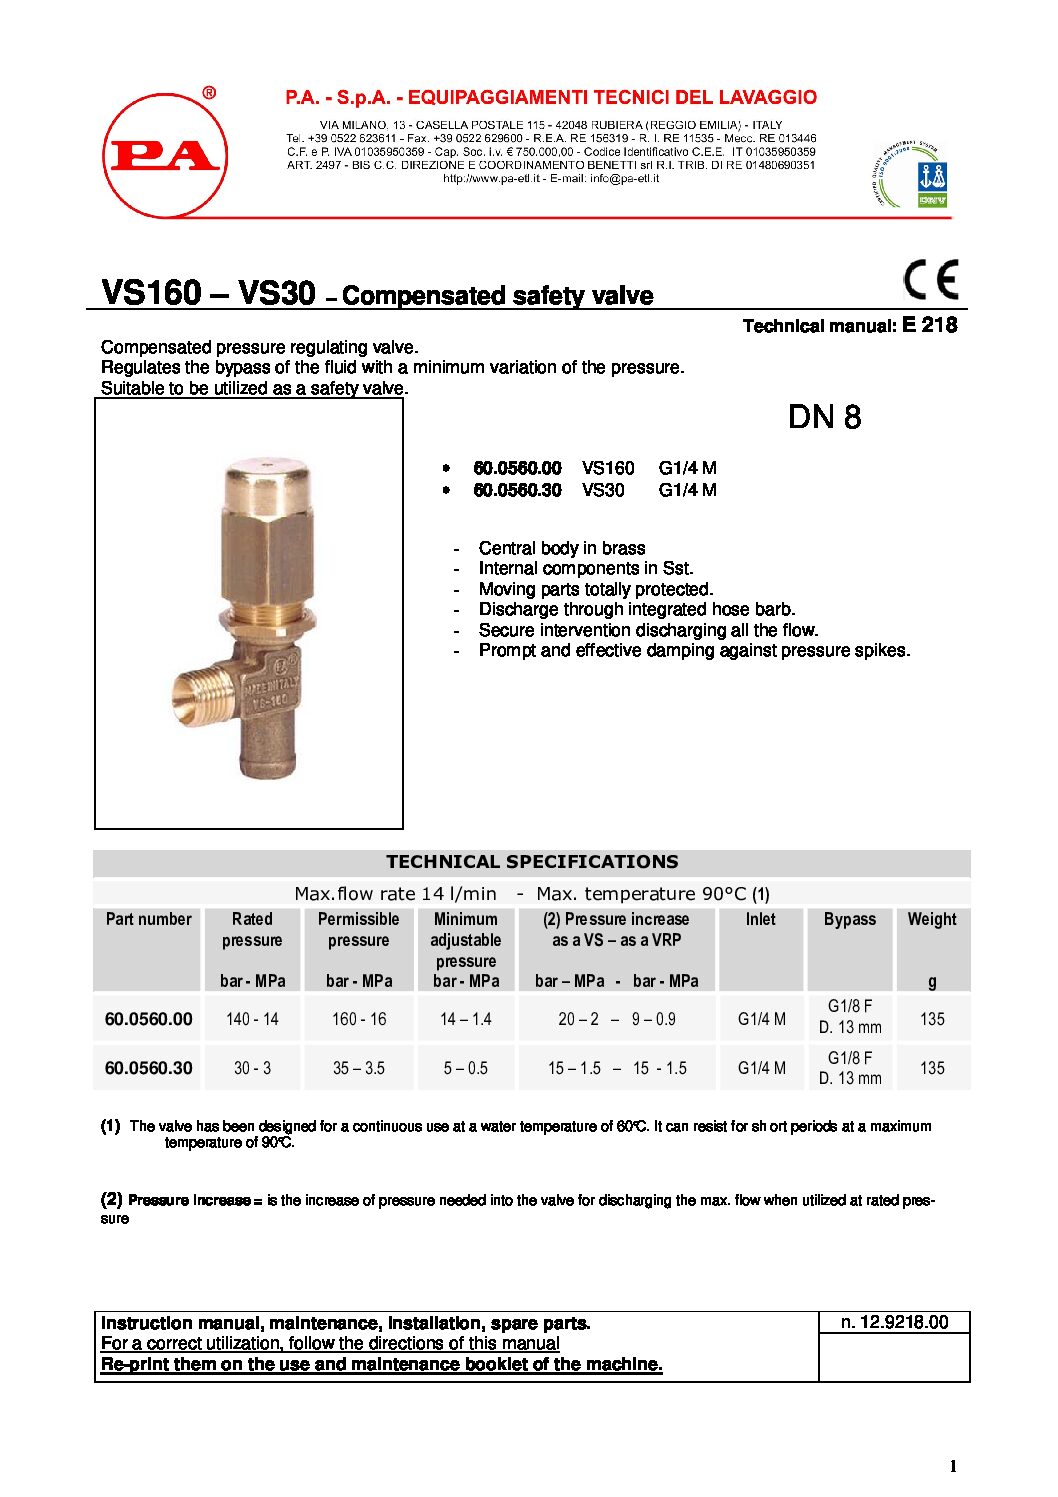 PA VS30 safety valve technical manual